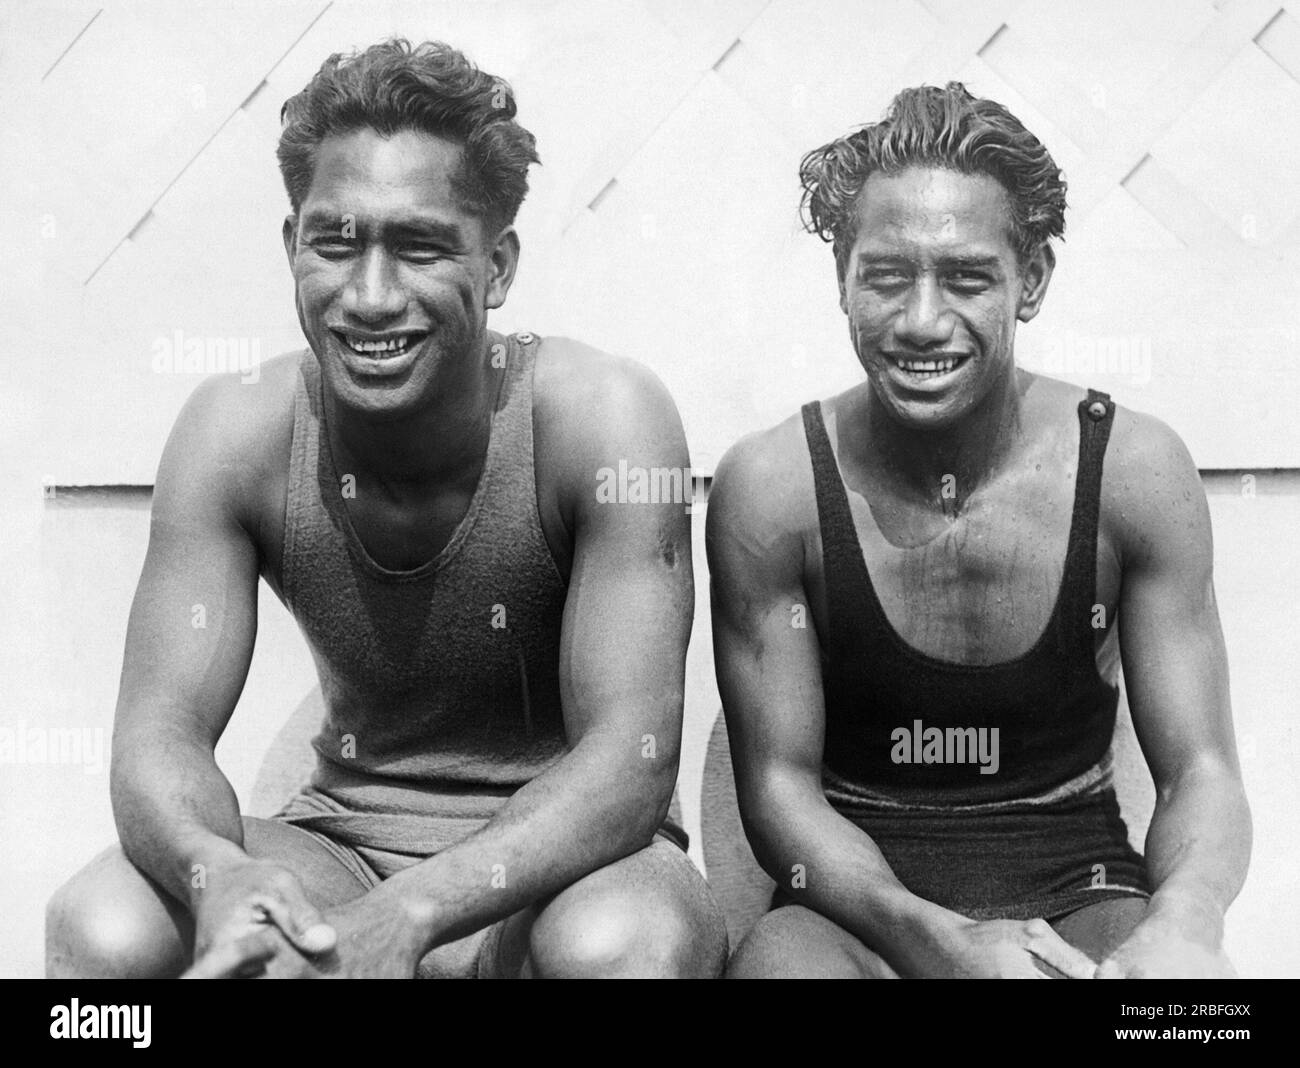 Long Beach, Californie : 15 juin 1924 les stars de natation hawaïennes Duke Kahanamoku (à gauche) et son jeune frère Sam lors d'une pause pendant les essais à la piscine olympique de long Beach pour les Jeux olympiques d'été de 1924. Duke a remporté la médaille d'or du 100 mètres freestyle aux Olympoics 1912 à Stockholm. Banque D'Images